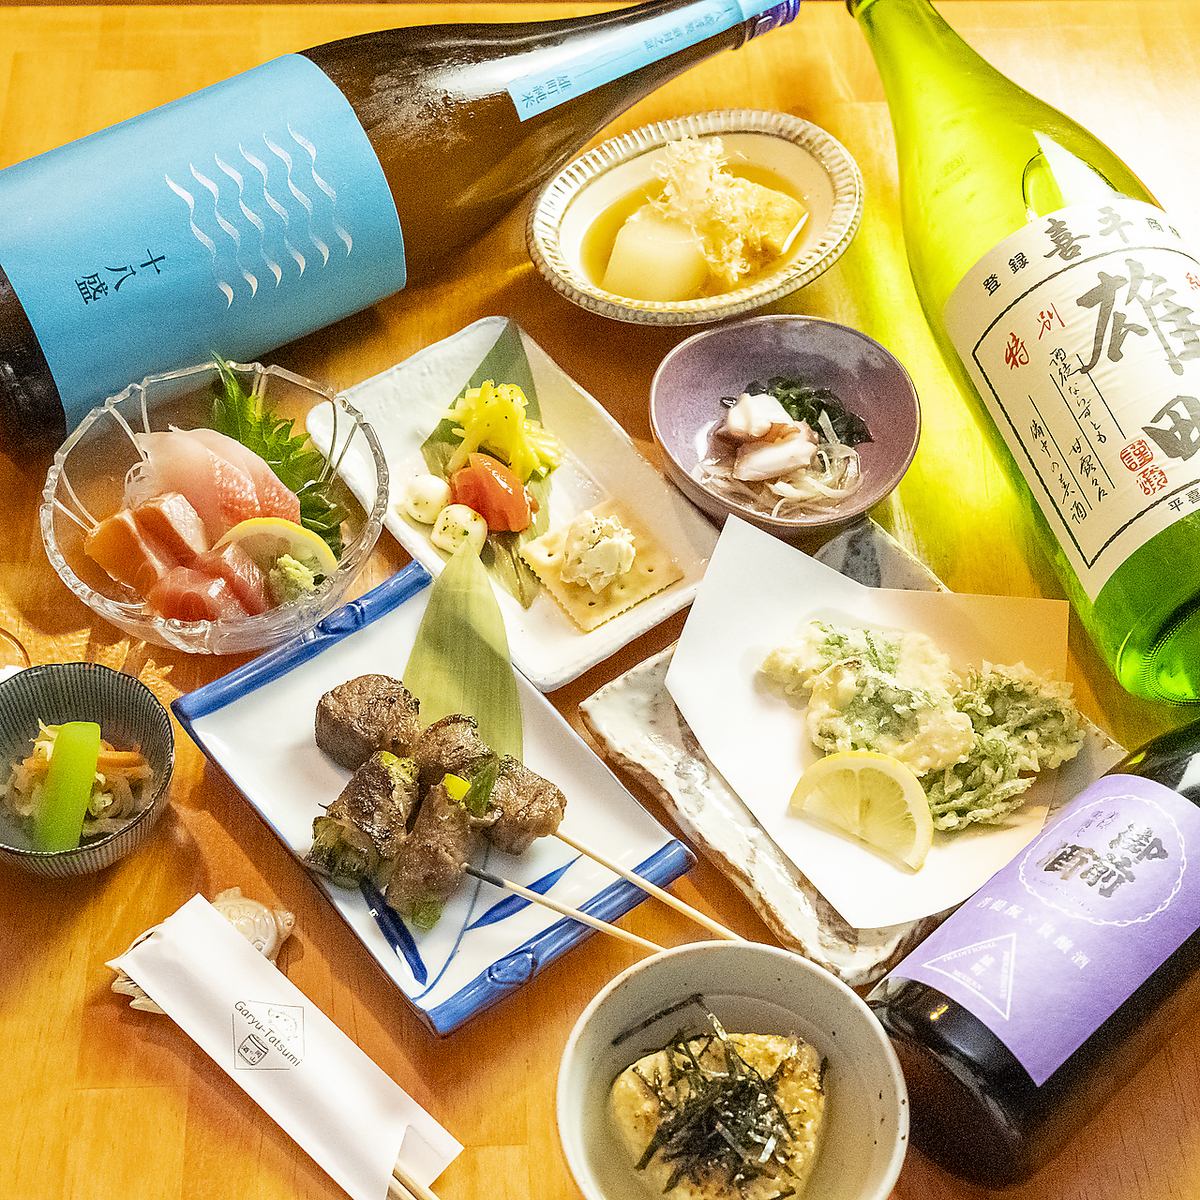 您可以品嚐岡山縣精心製作的菜餚和縣內釀酒廠的當地酒。